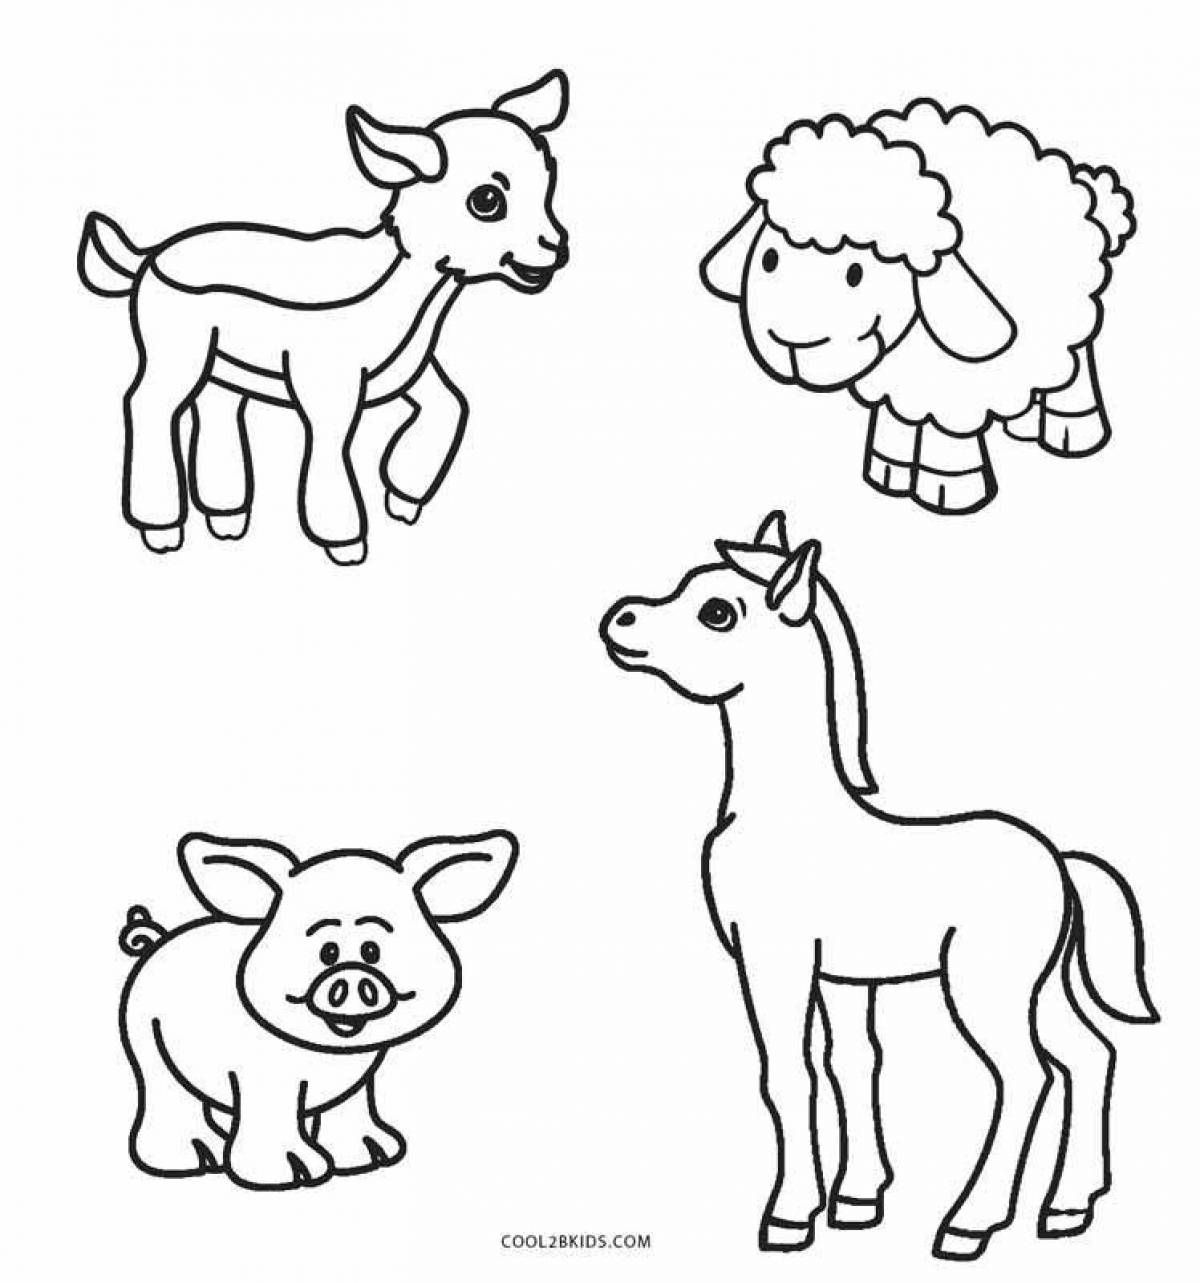 Раскраски животные распечатать бесплатно, раскраски животных для детей с описанием